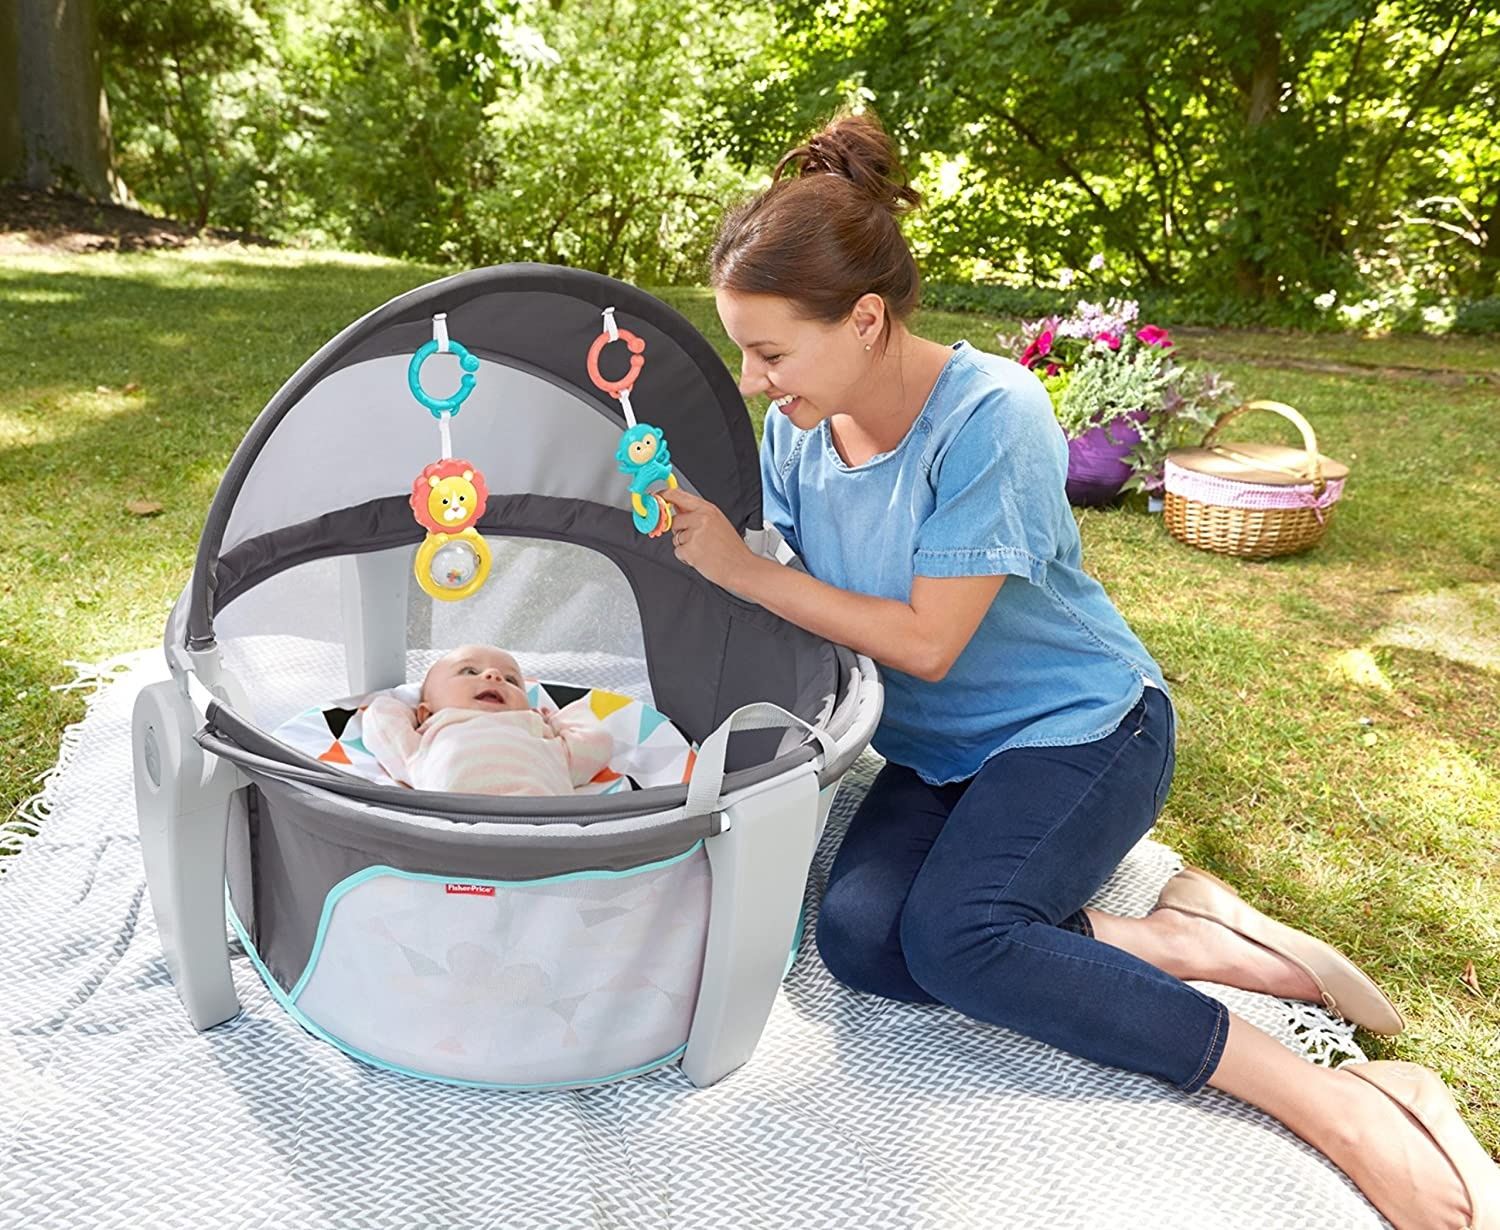 Țarc-patuț pentru bebe ideal pentru ieșire în aer liber